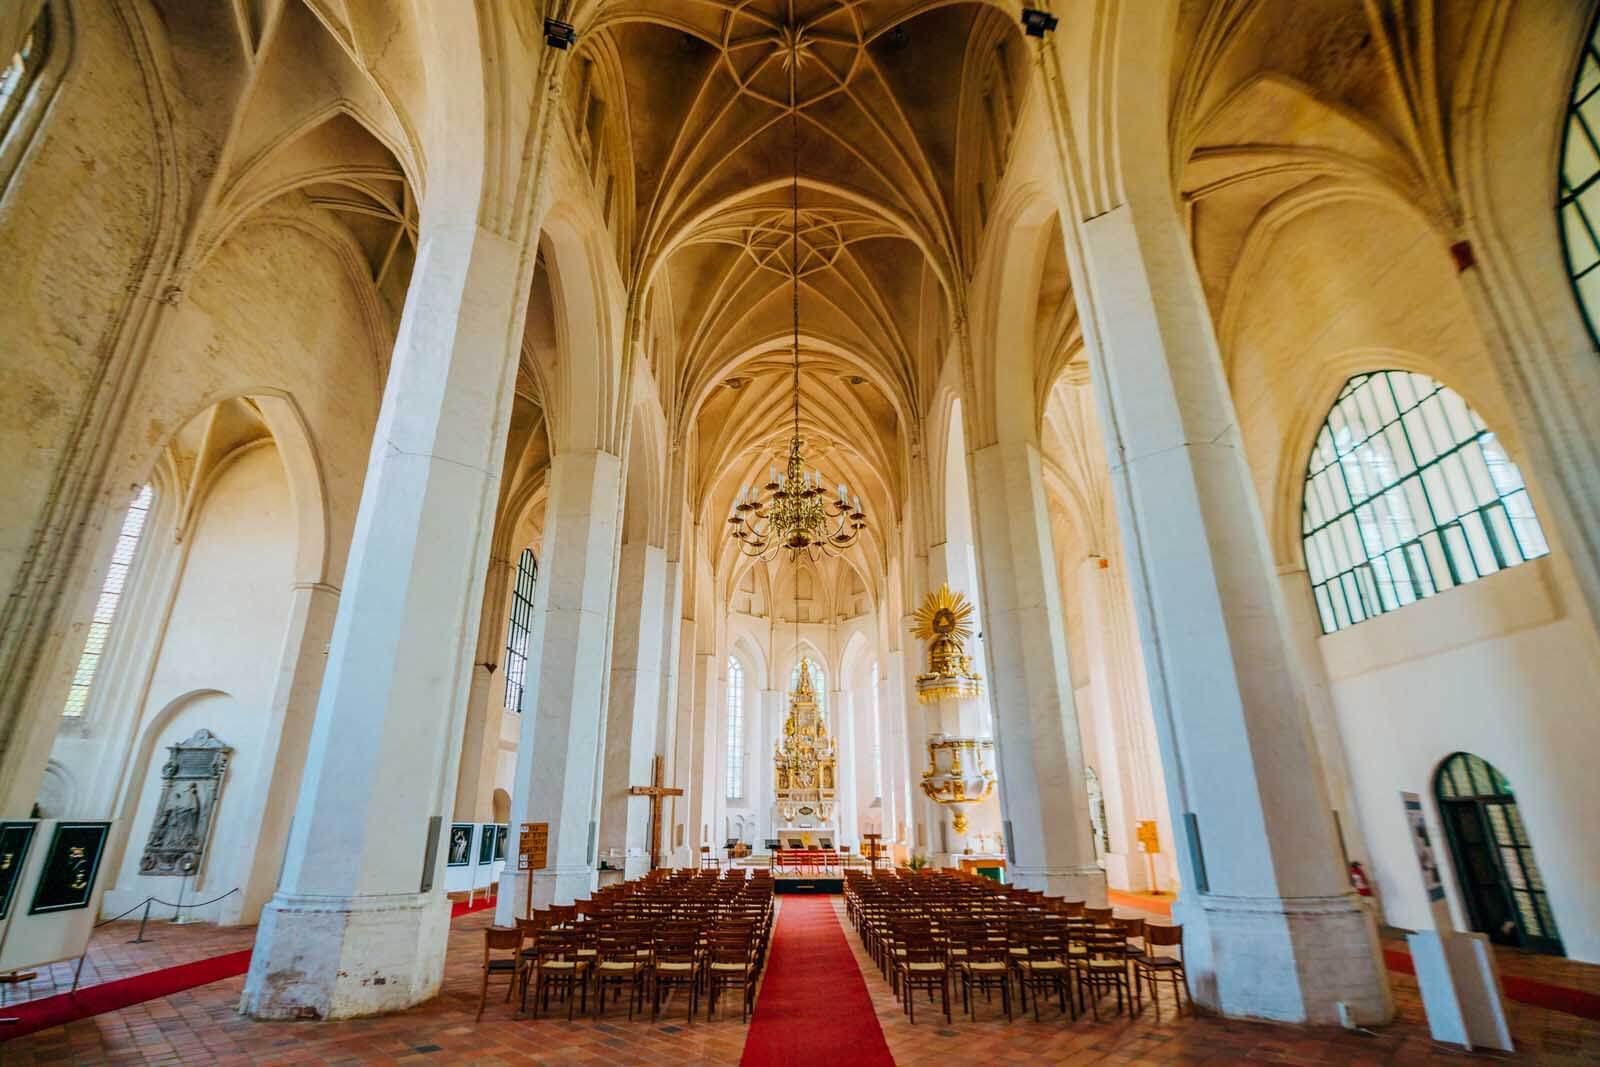 Inside Church of St. Nikolai in Cottbus Germany